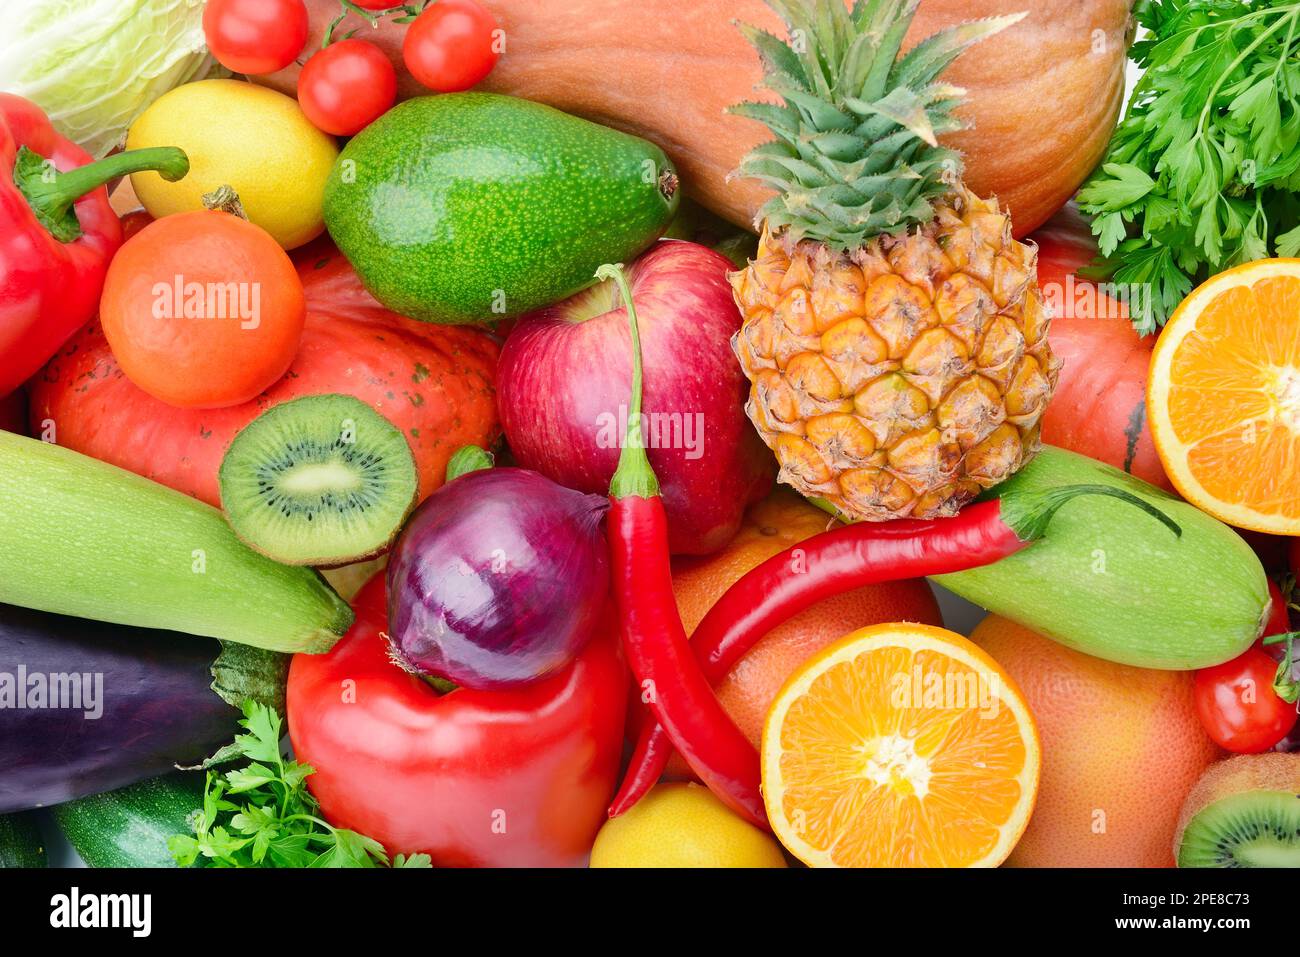 Contexte de la collection fruits et légumes frais . Aliments biologiques sains. Banque D'Images